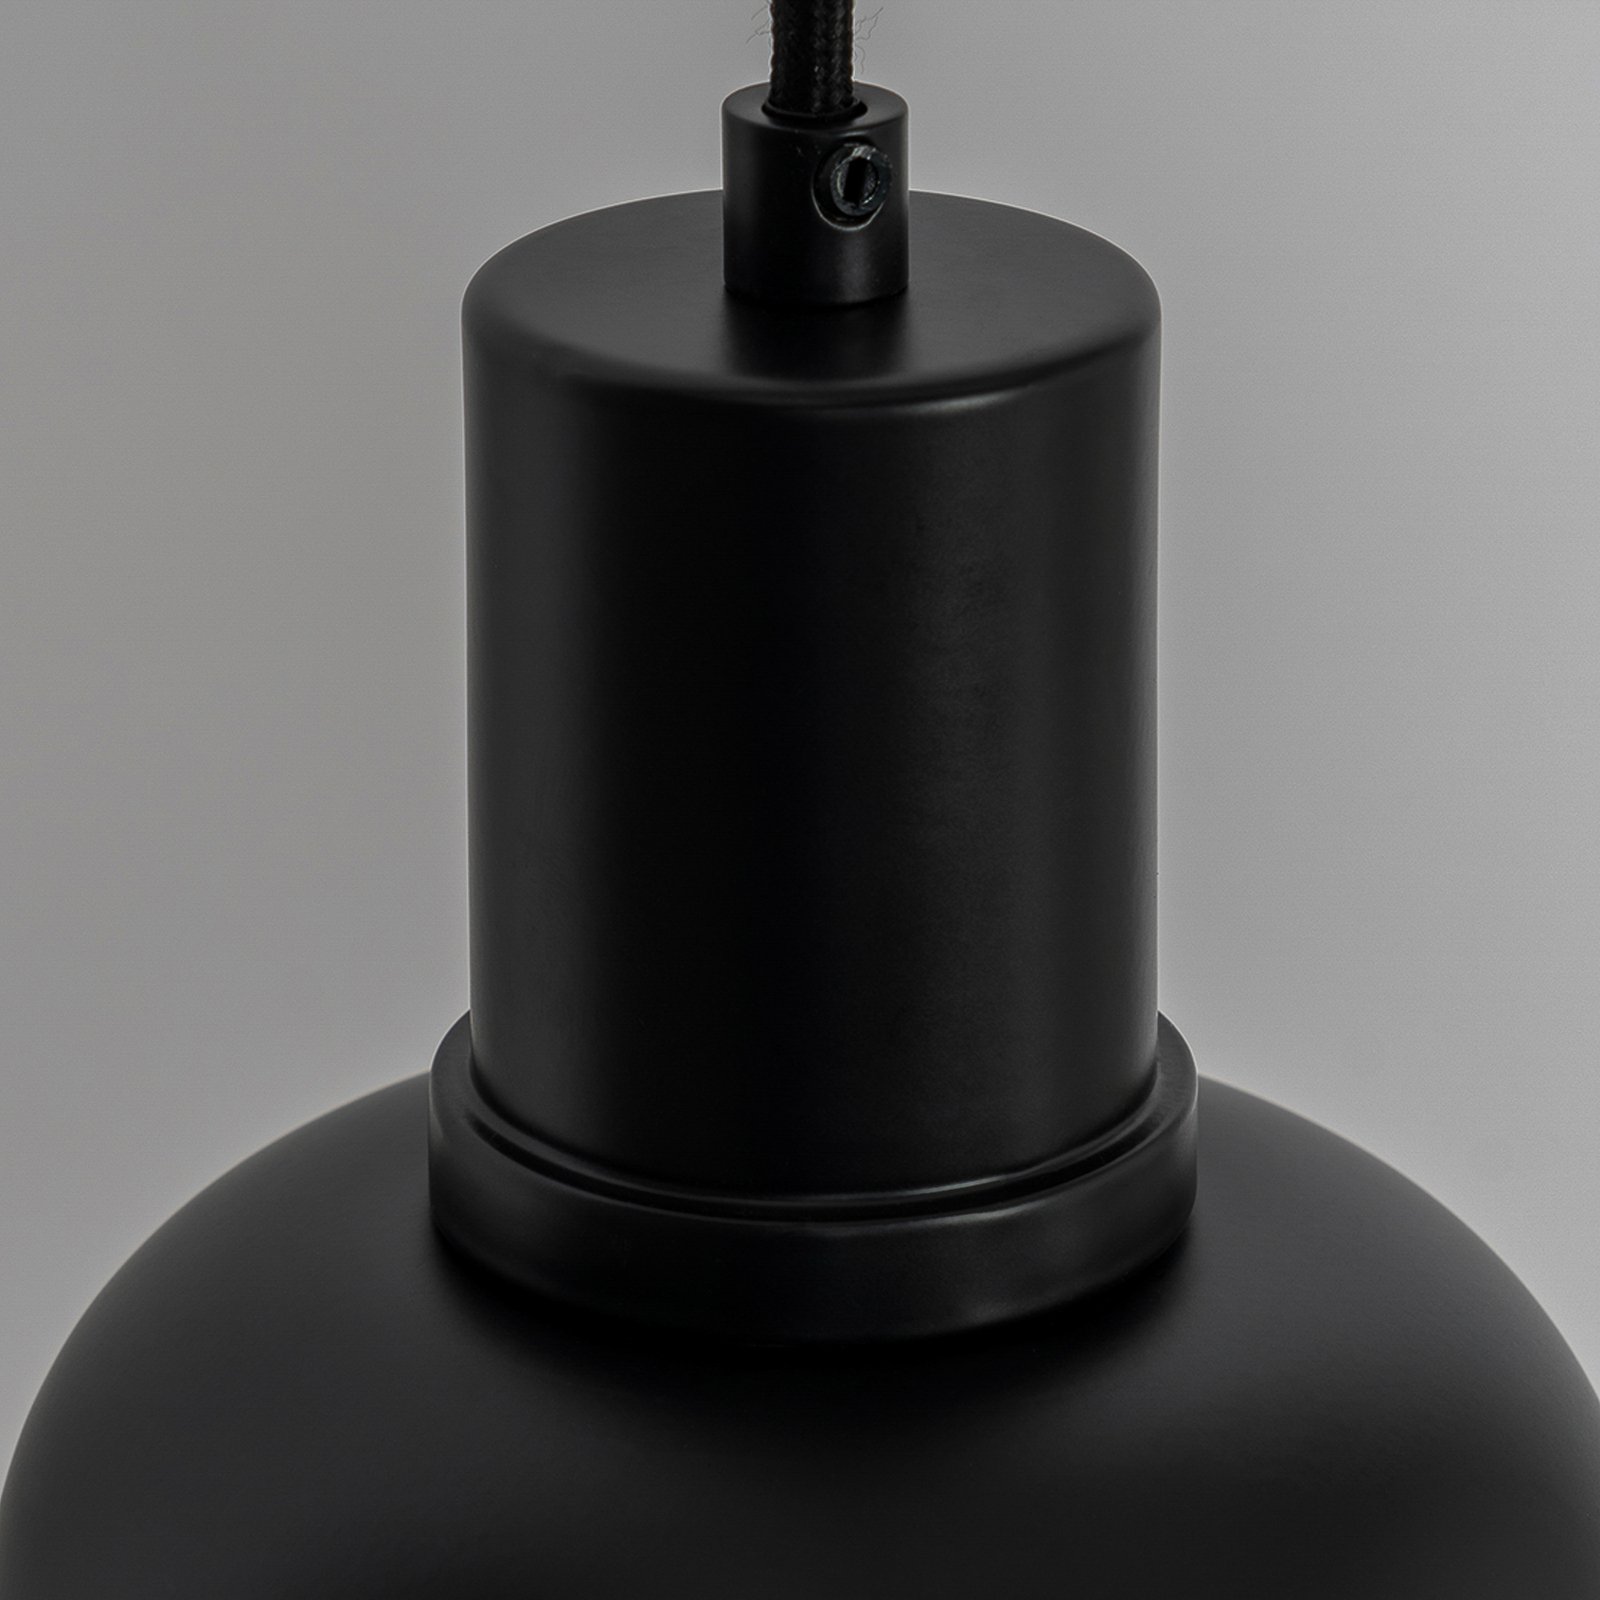 Lucande Servan hänglampa, svart, 1 lampa